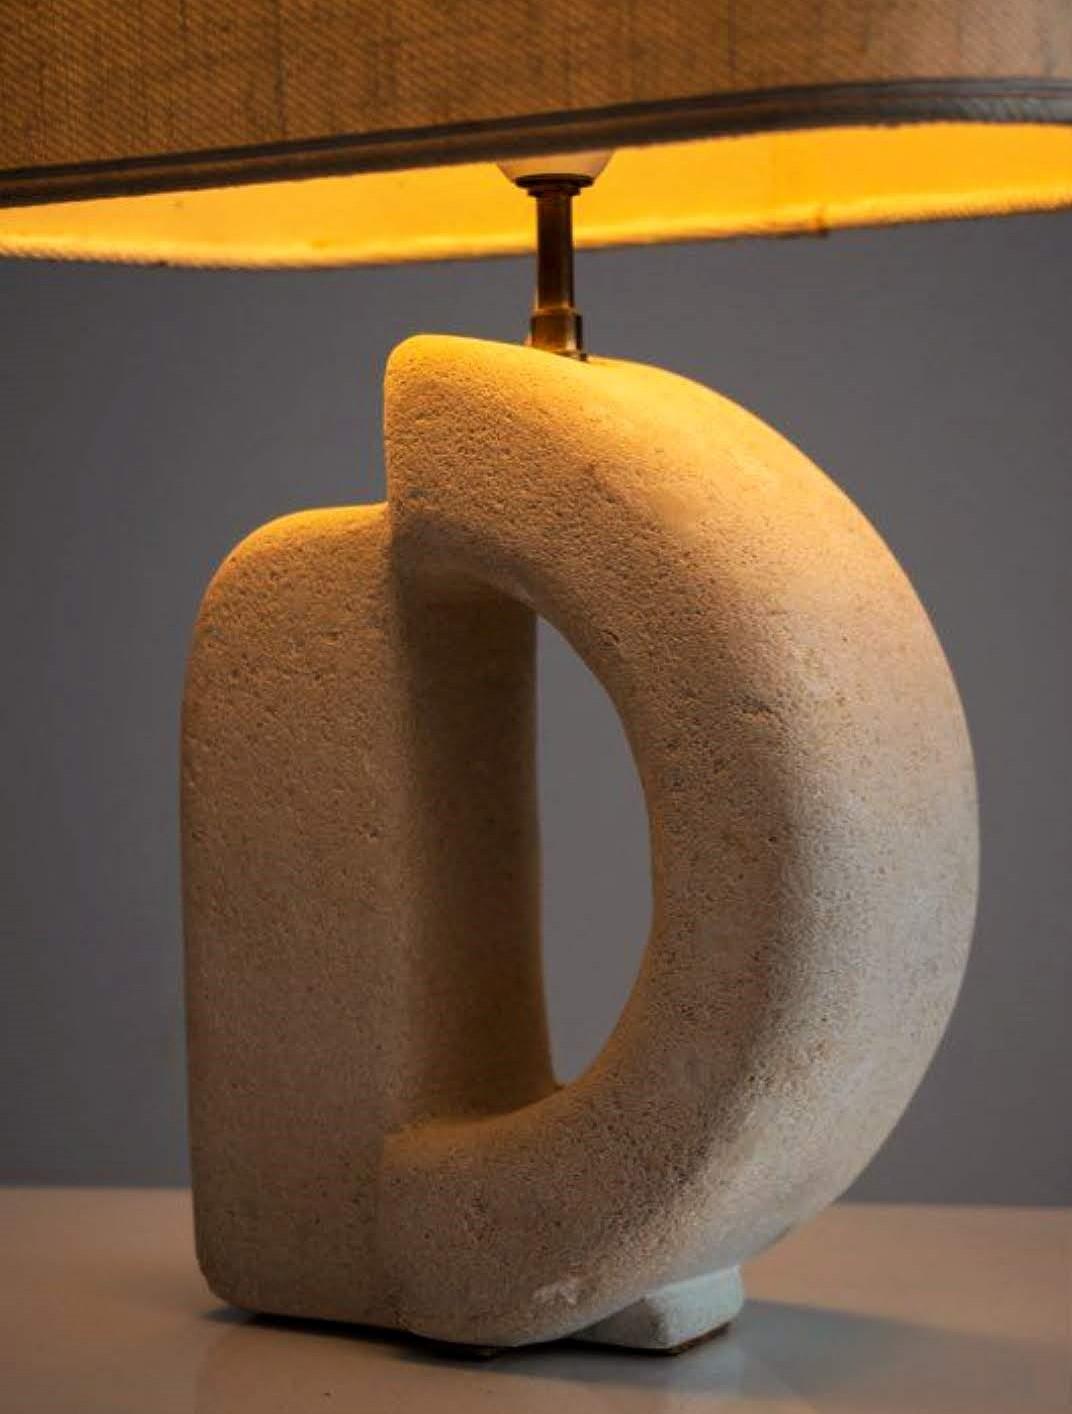 Rare lampe de table sculpturale en pierre moulée d'Albert Tormos, France 1970. 
.
Cette belle pièce en pierre moulée est composée de deux parties : la base comprenant l'installation électrique, et un large abat-jour.
.
La taille est très bonne